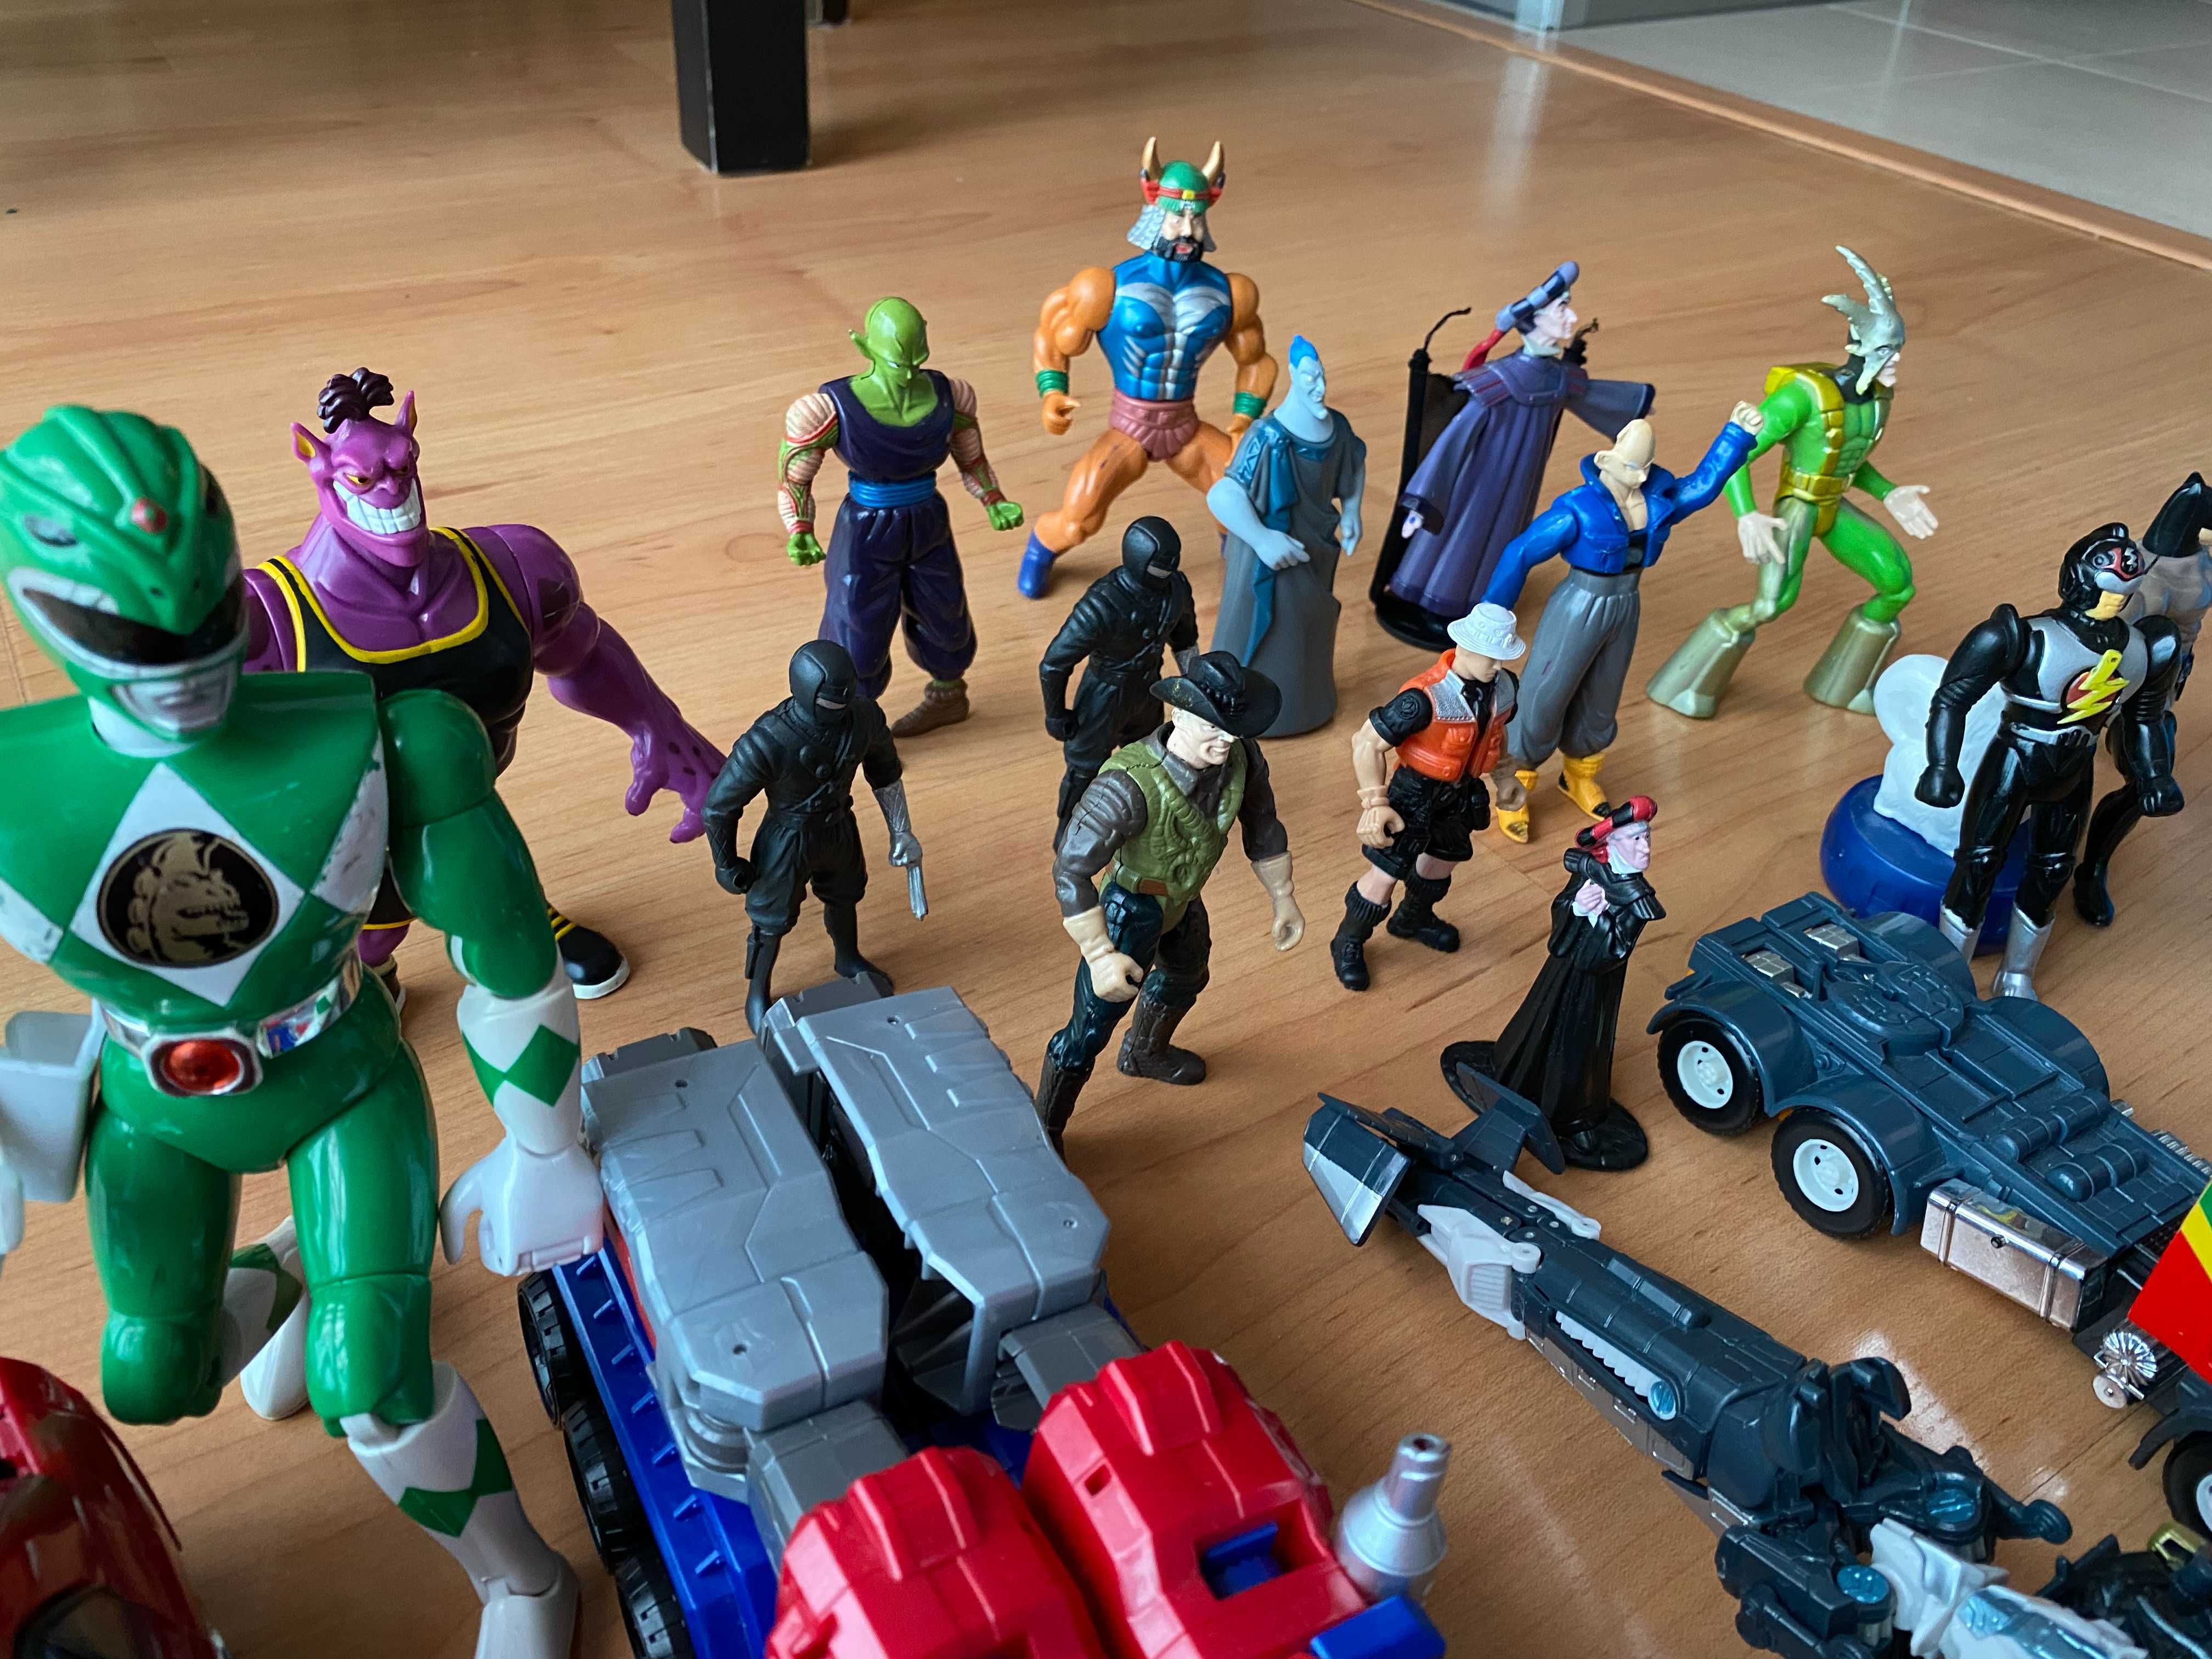 Brinquedos diferentes: figuras, carros, transformers